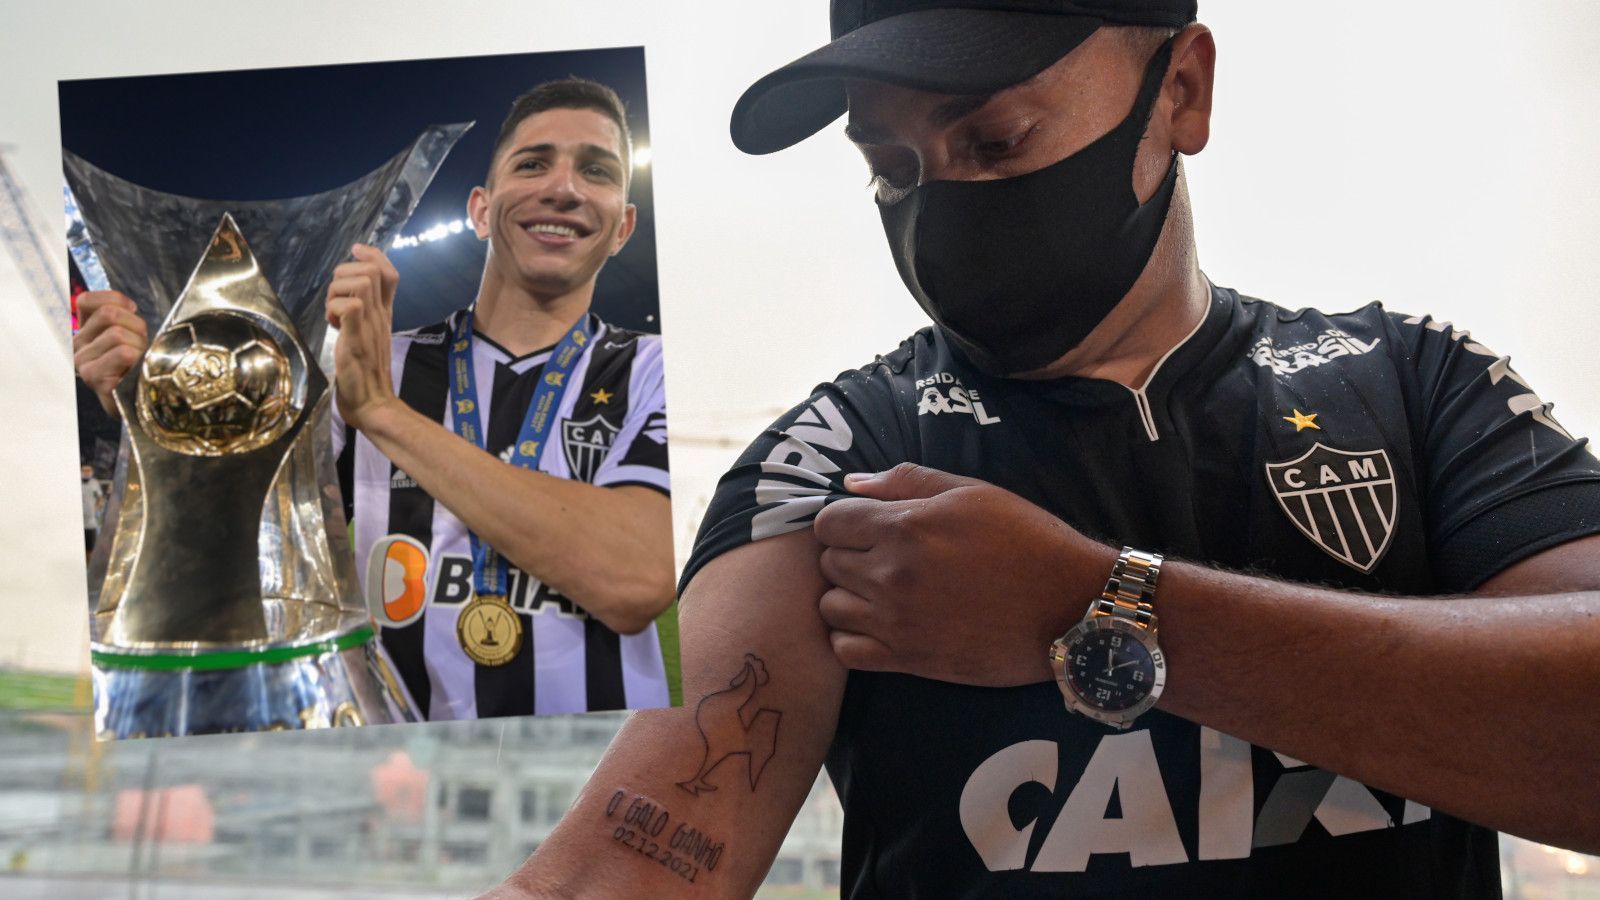 
                <strong>Atletico Mineiro spendiert Fans Meister-Tattoos</strong><br>
                Emotionen pur bei Atletico Mineiro! Der Verein aus Belo Horizonte ist zum ersten Mal seit 50 Jahren brasilianischer Meister geworden und will diesen langersehnten Erfolg mit seinen Fans feiern. Deshalb bot der Klub seinen Anhängern an, den Triumph auf der eigenen Haut zu verewigen. Fans konnten sich ein kostenloses Meister-Tattoo stechen lassen. Im Regen standen sie an, um sich im derzeit im Bau befindlichen neuen Stadion eines von vier Motiven stechen zu lassen. Dafür hatte Atletico 30 Tattoo-Künstler engagiert. Insgesamt wurden 1.000 Tattoos gestochen, interessierte Fans sollten im Gegenzug eine Essensspende für Bedürftige leisten. Atletico Mineiro hatte seine zweite Meisterschaft in der vergangenen Woche mit einem 3:2 über Bahia errungen. 
              